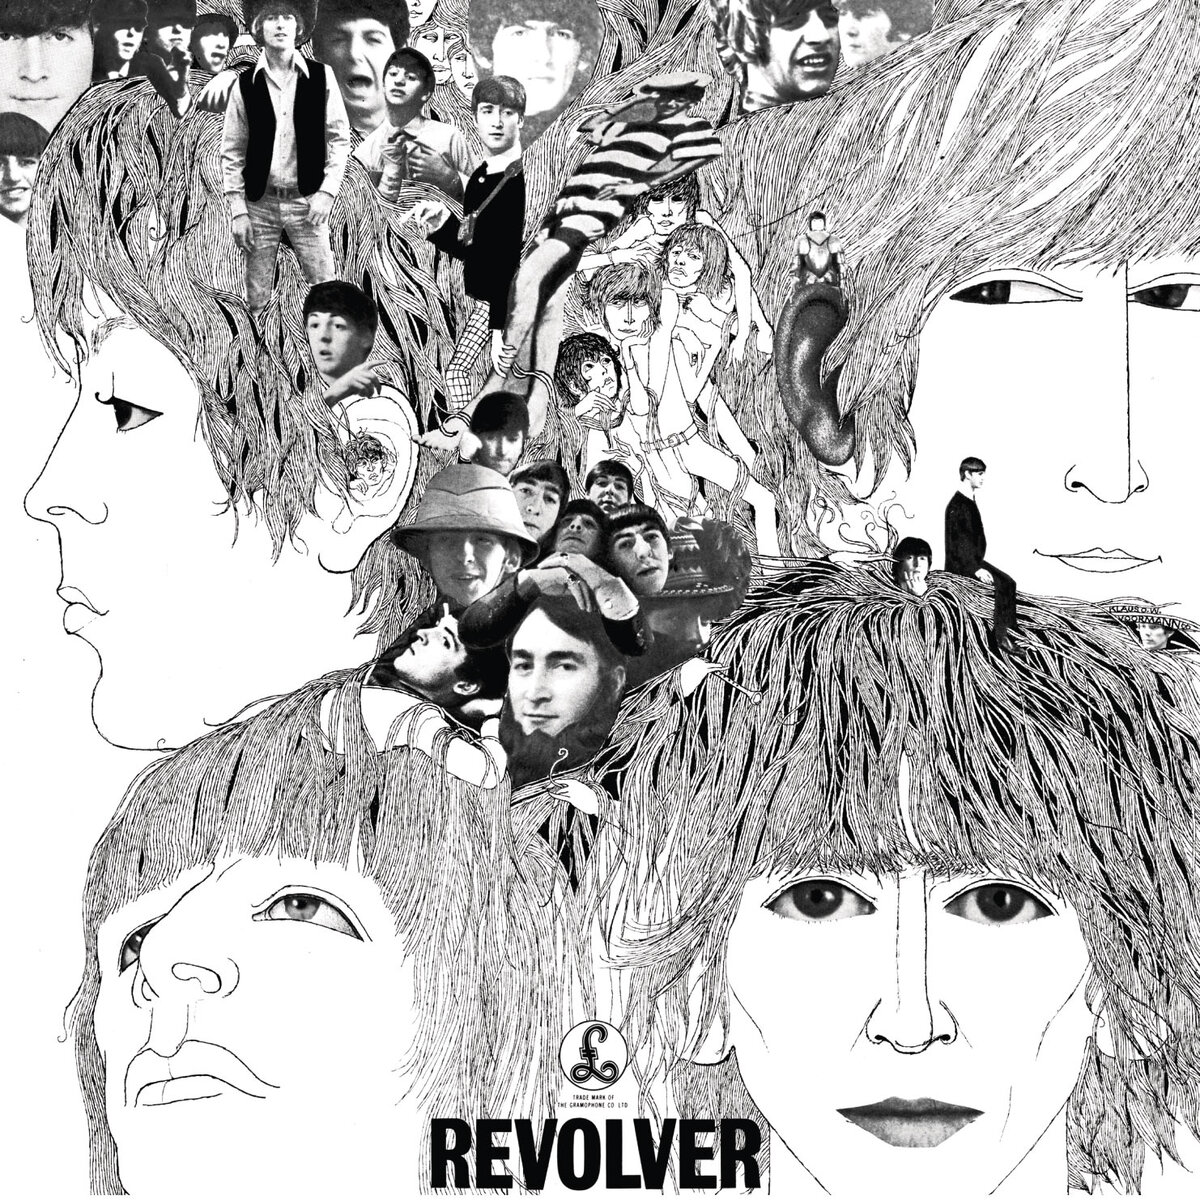 Обложка пластинки Revolver (1966) тоже располагает к толкованию в пользу психоделики.